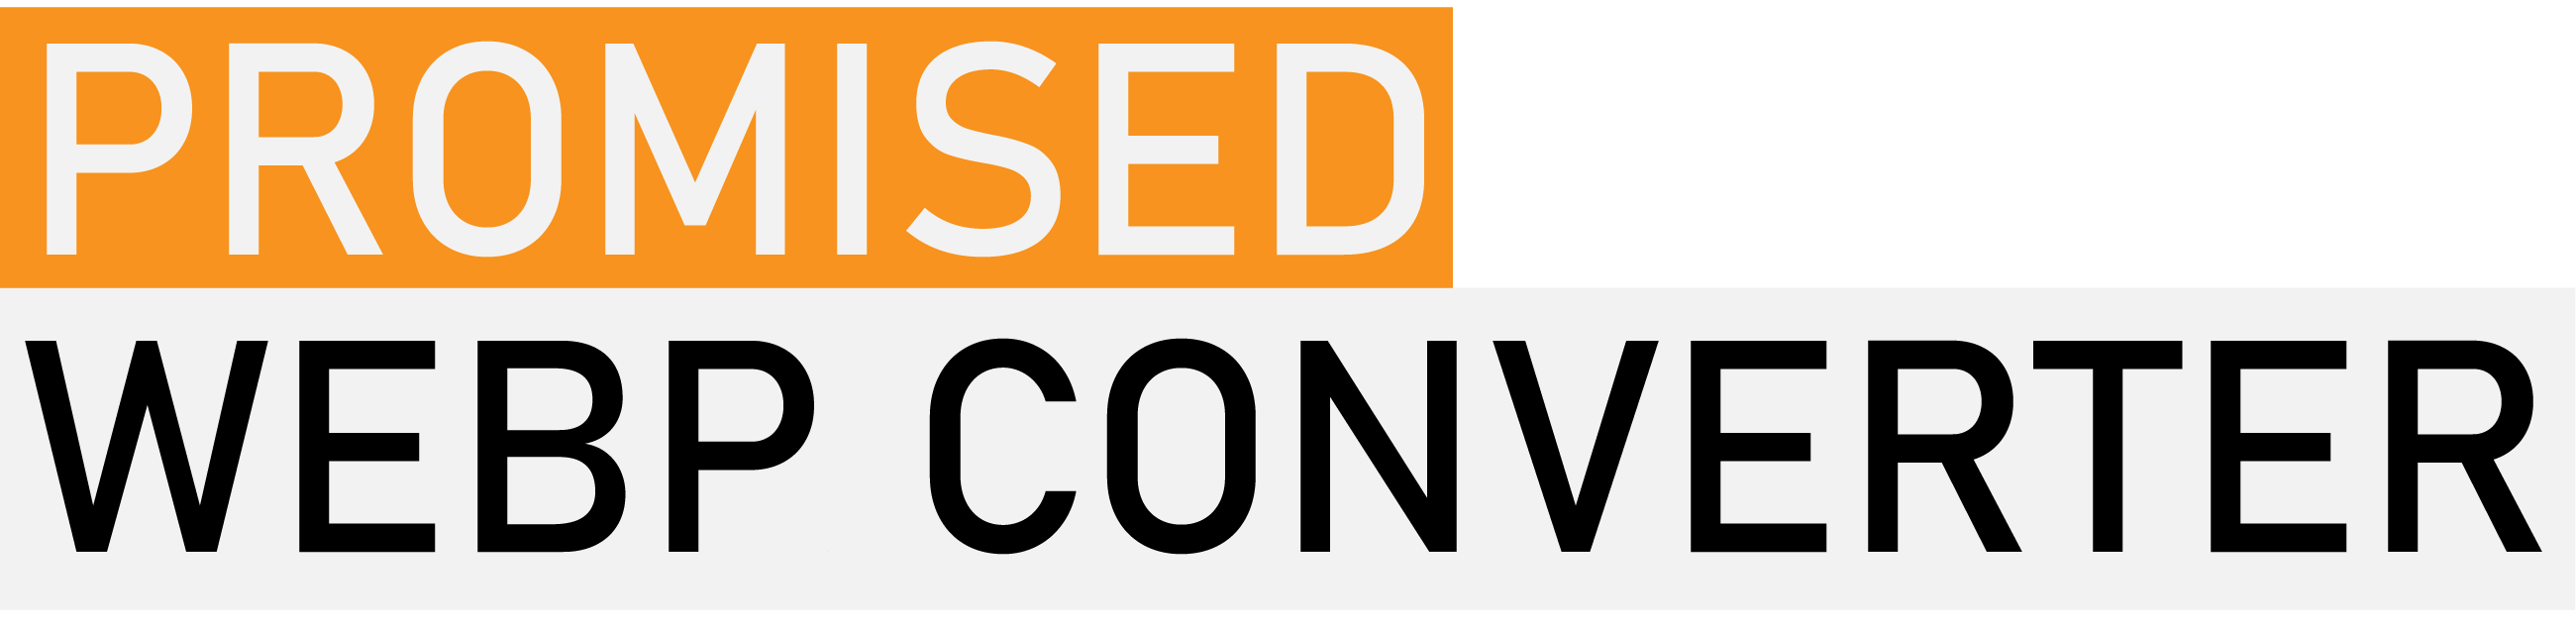 promised-webp-converter Logo